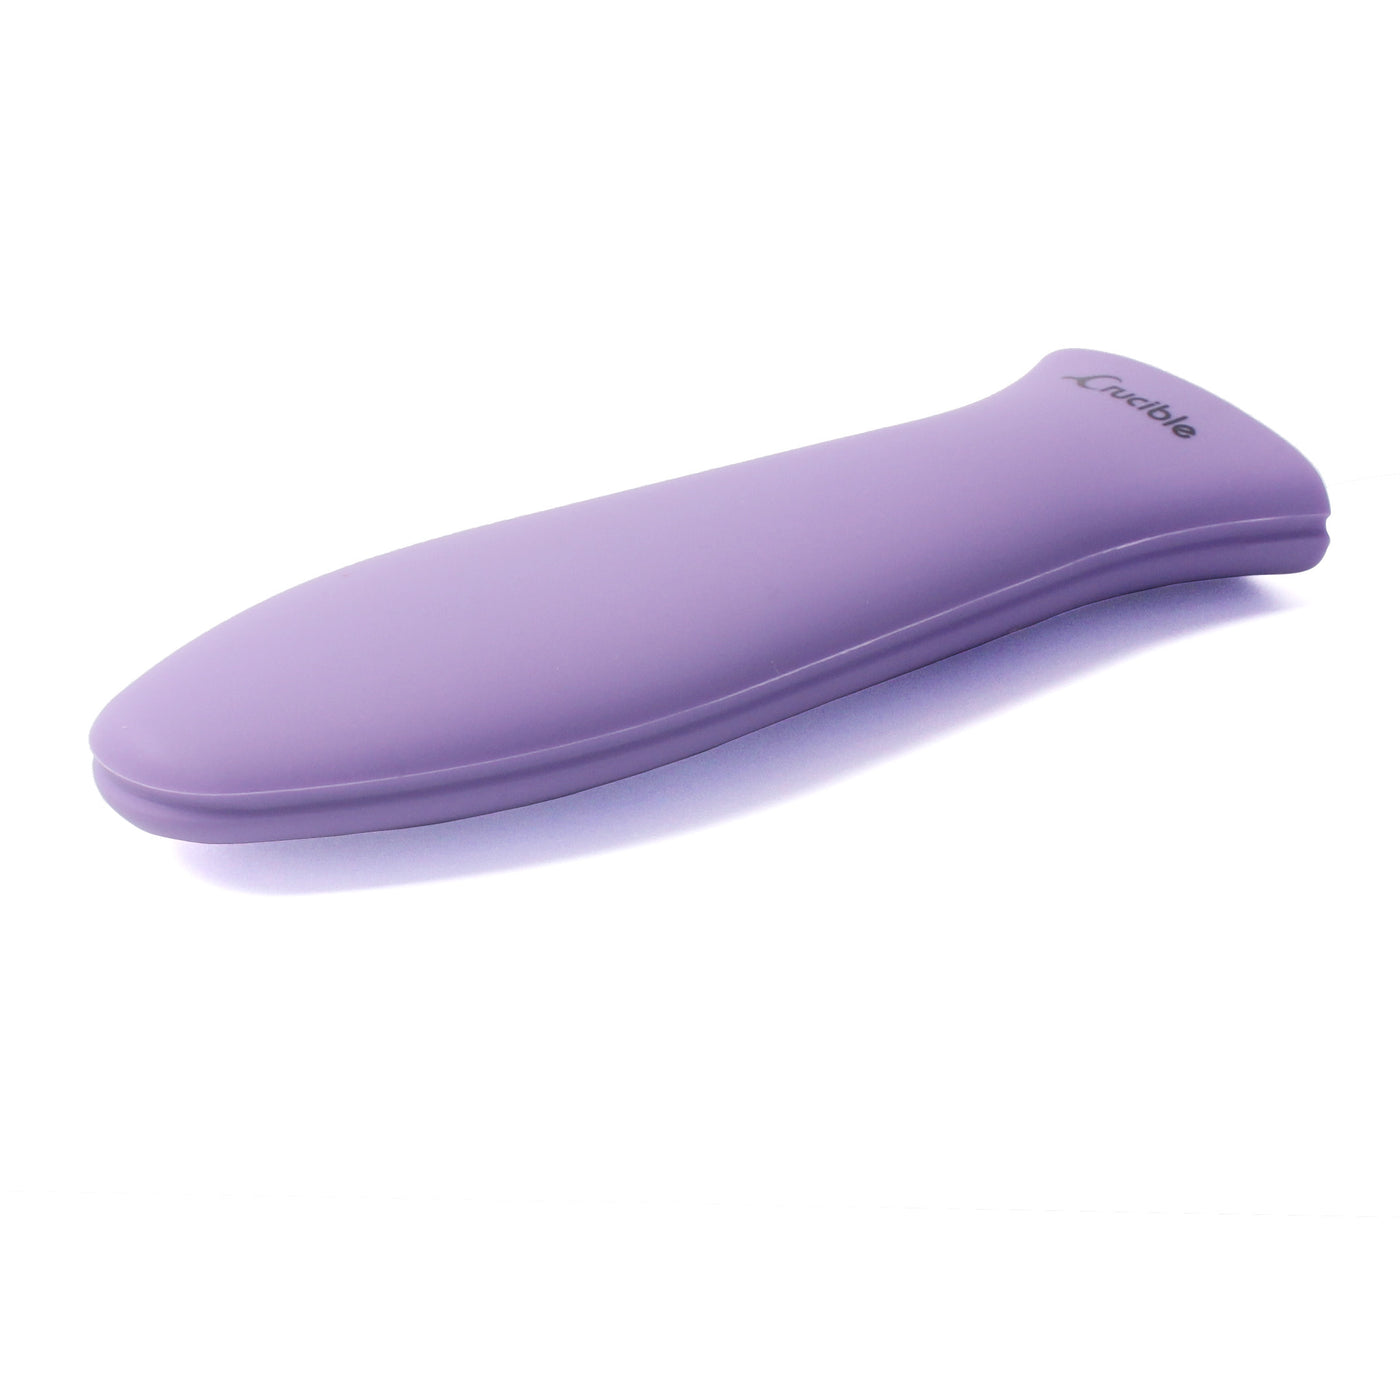 Силиконовый держатель для горячей ручки, прихватки (3 шт., фиолетовый), рукоятка, крышка ручки